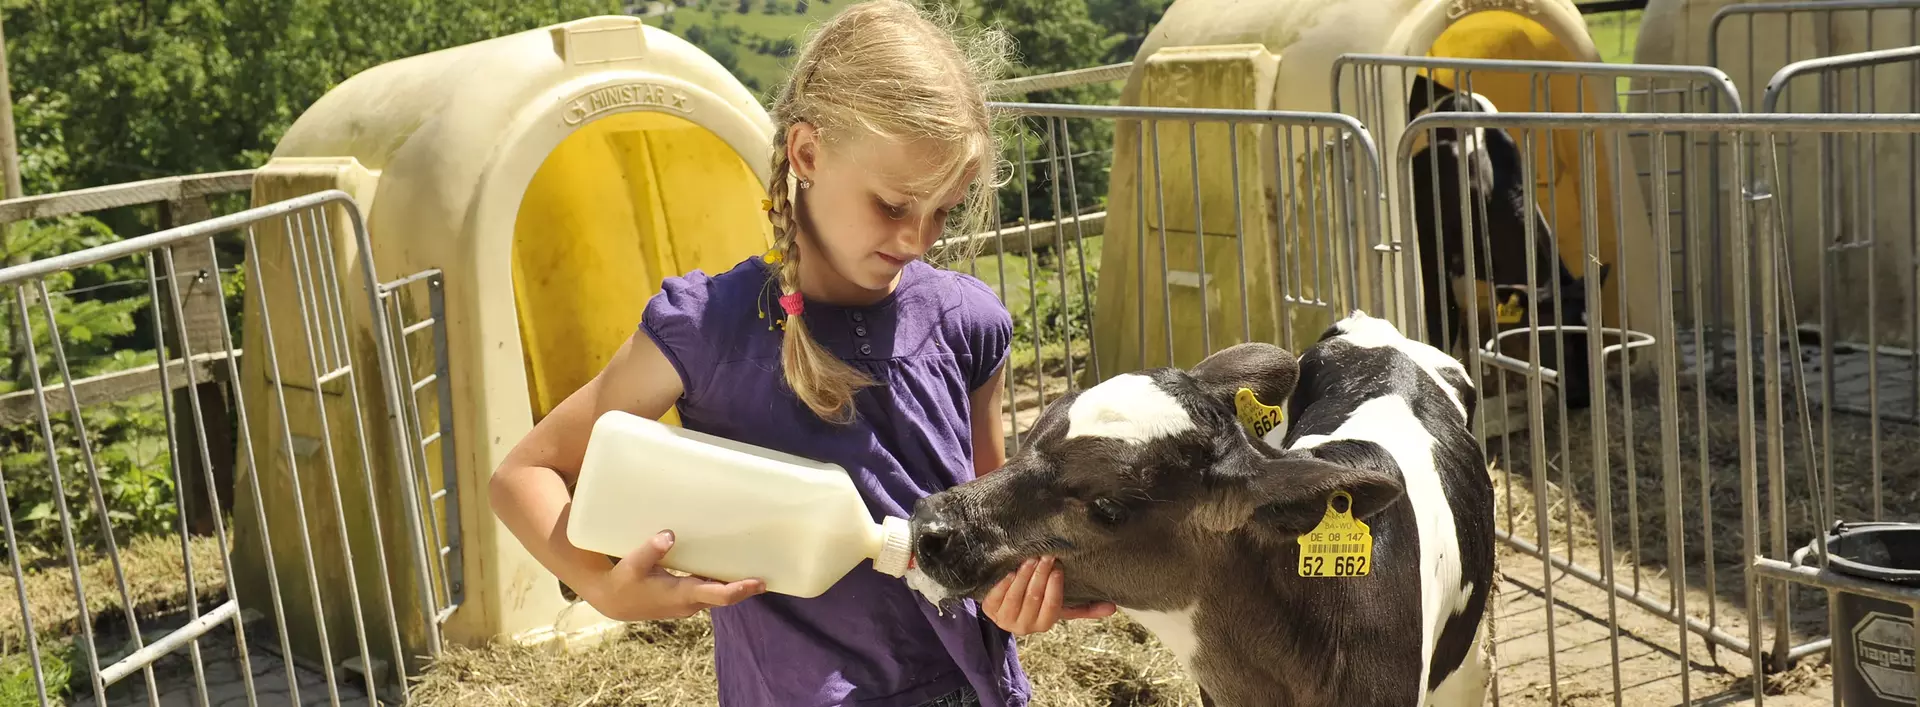 Mädchen füttert ein Kälbchen mit Milch